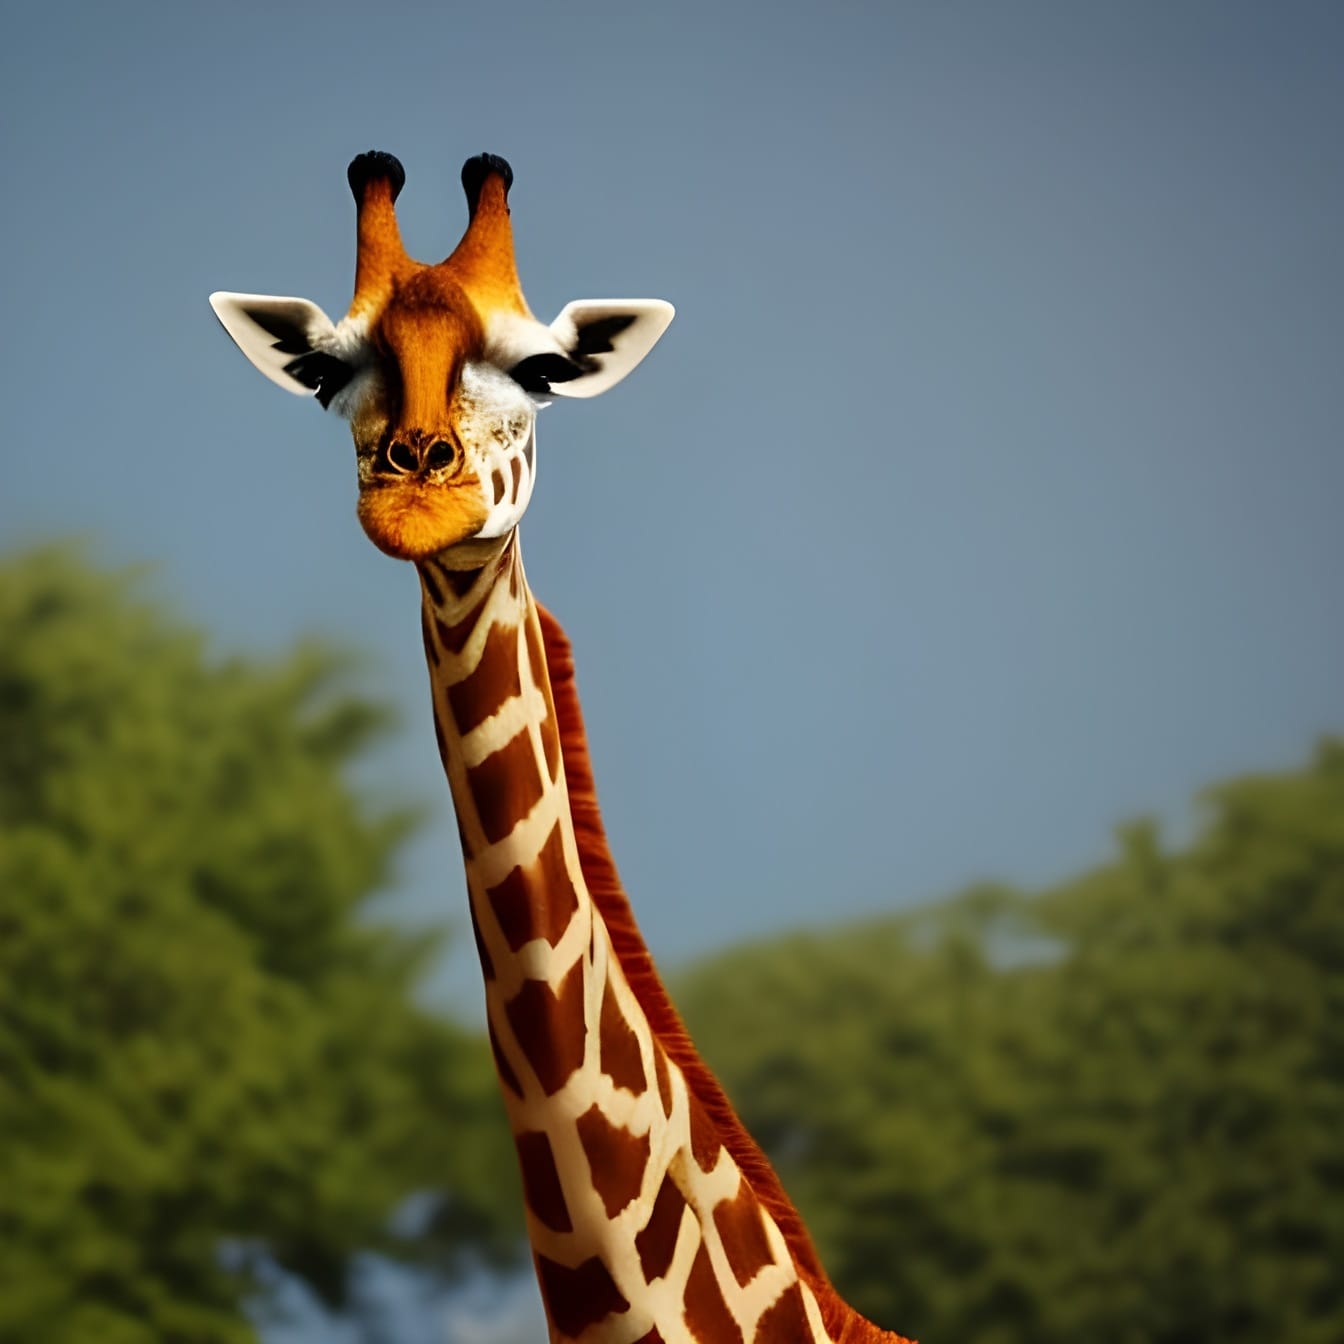 หัวยีราฟคอยาว (Giraffa) – ศิลปะปัญญาประดิษฐ์